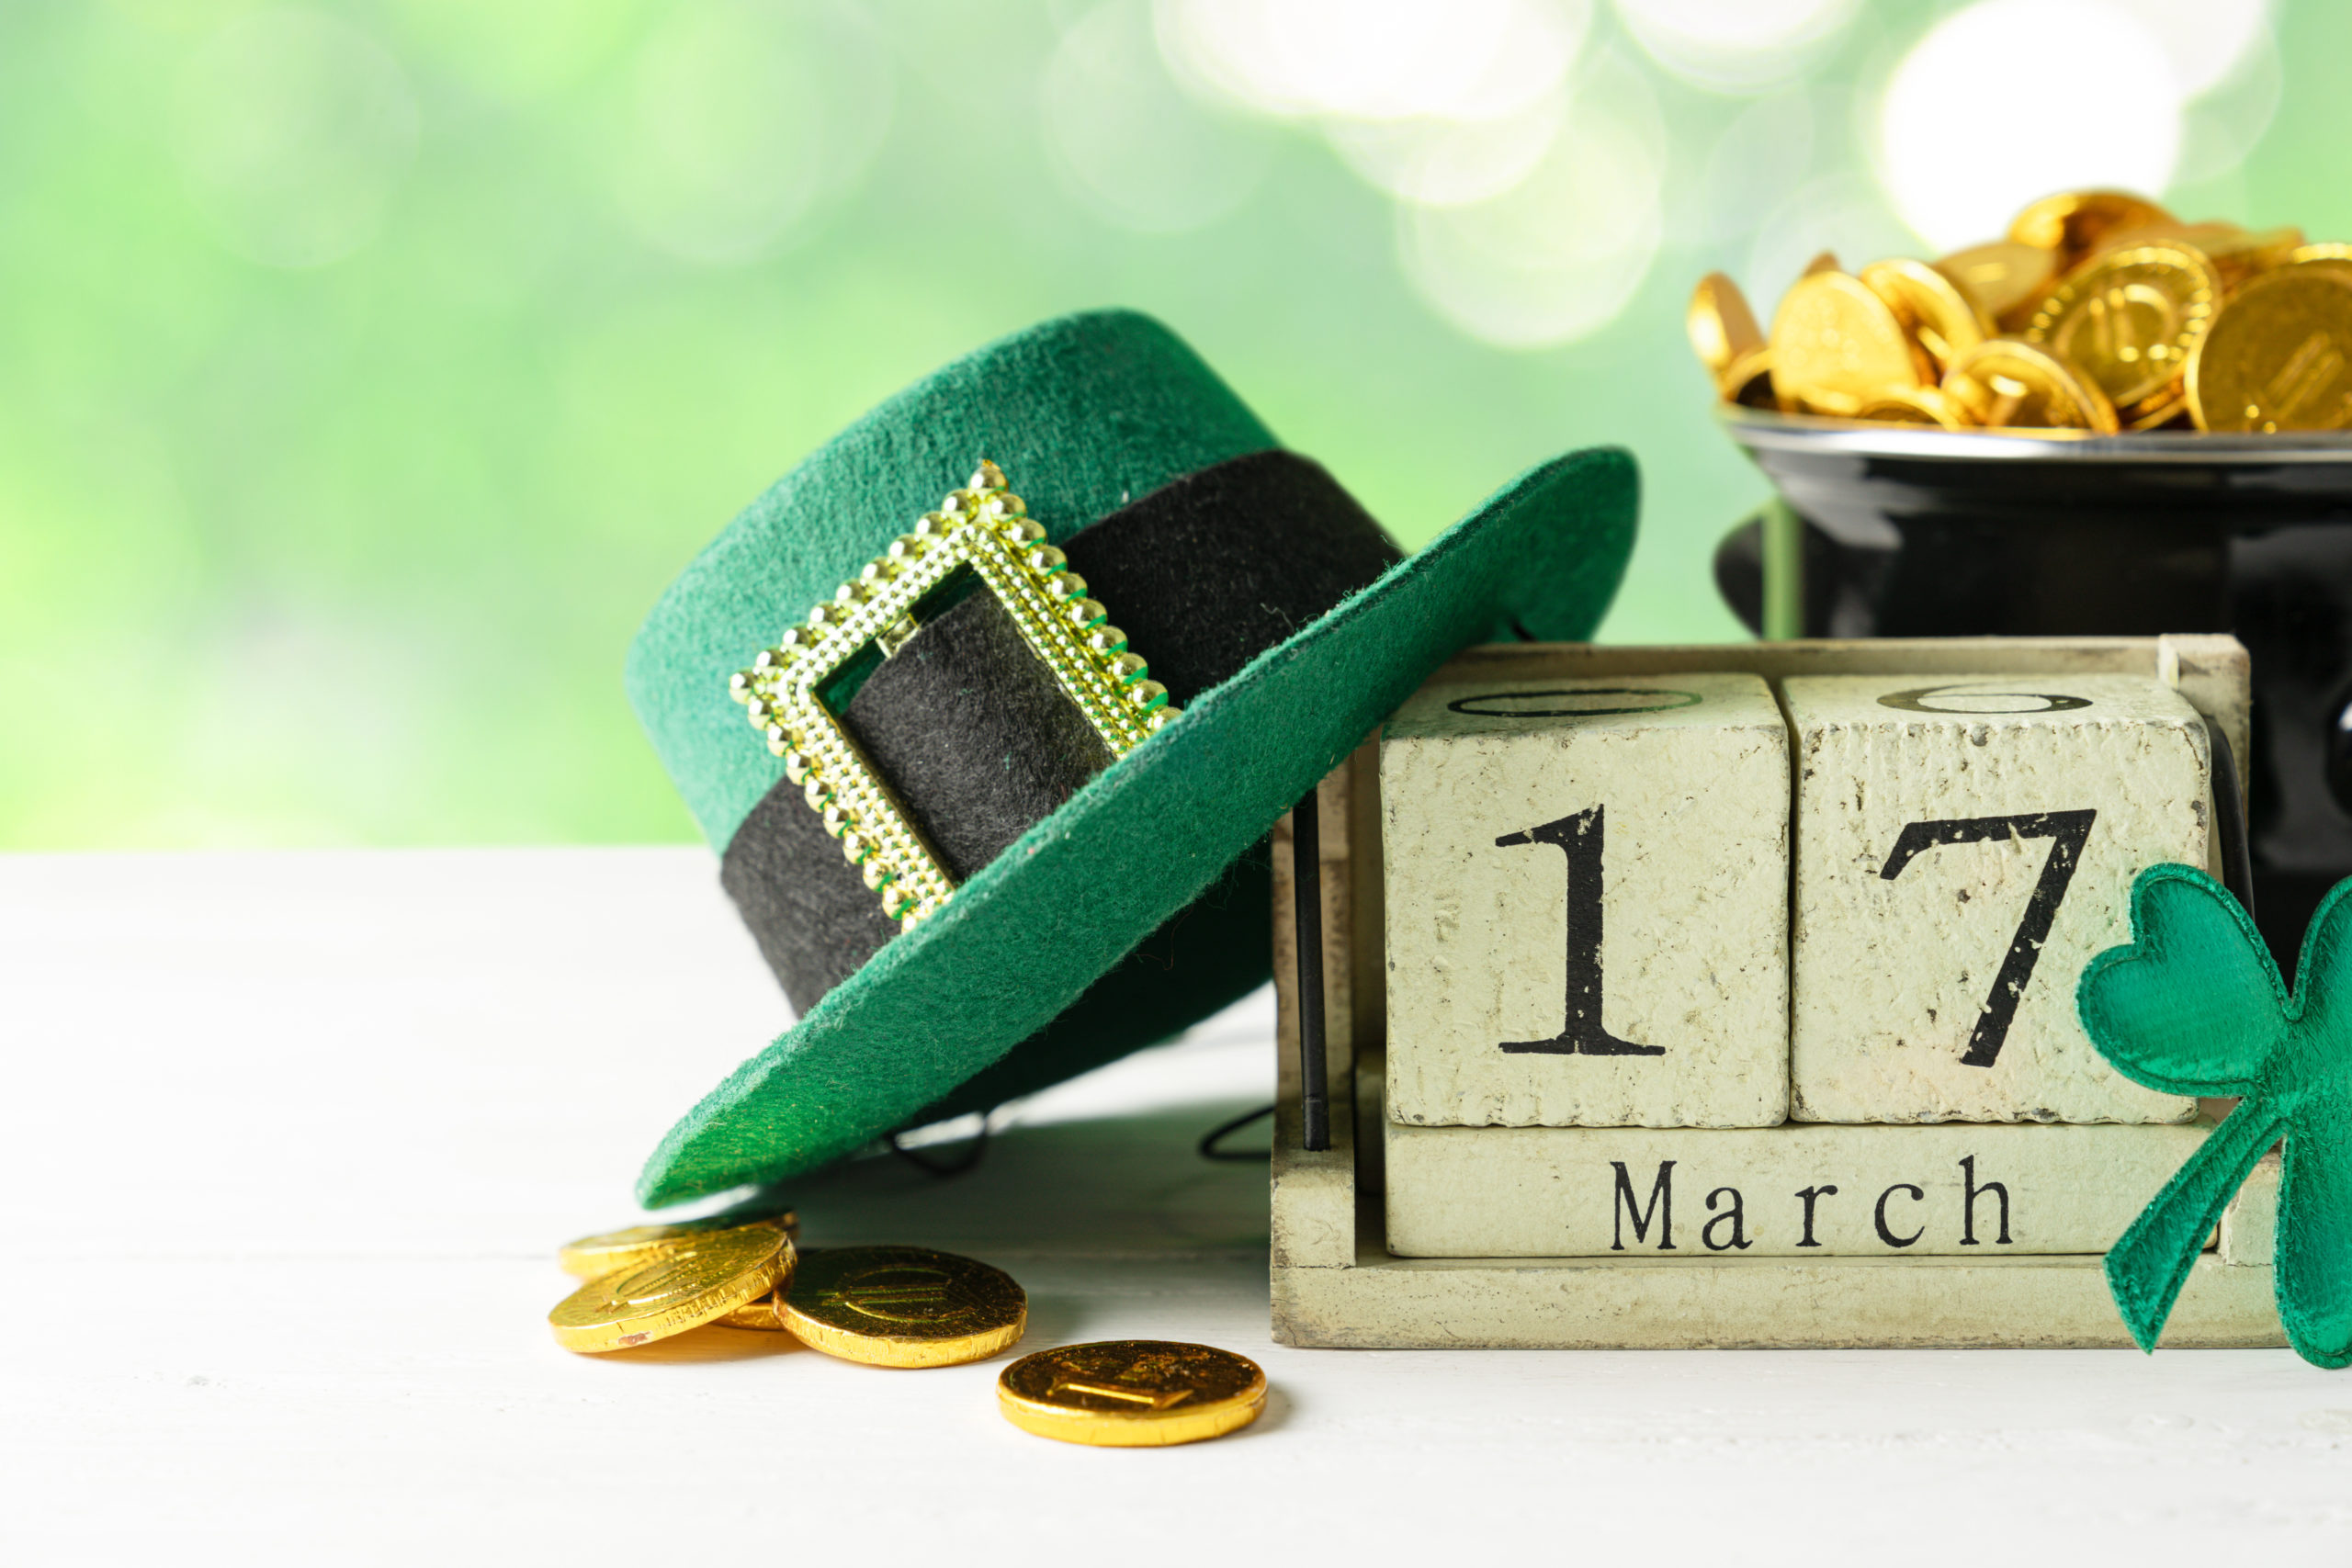 Ce 17 mars, les Irlandais fêtent la Saint-Patrick